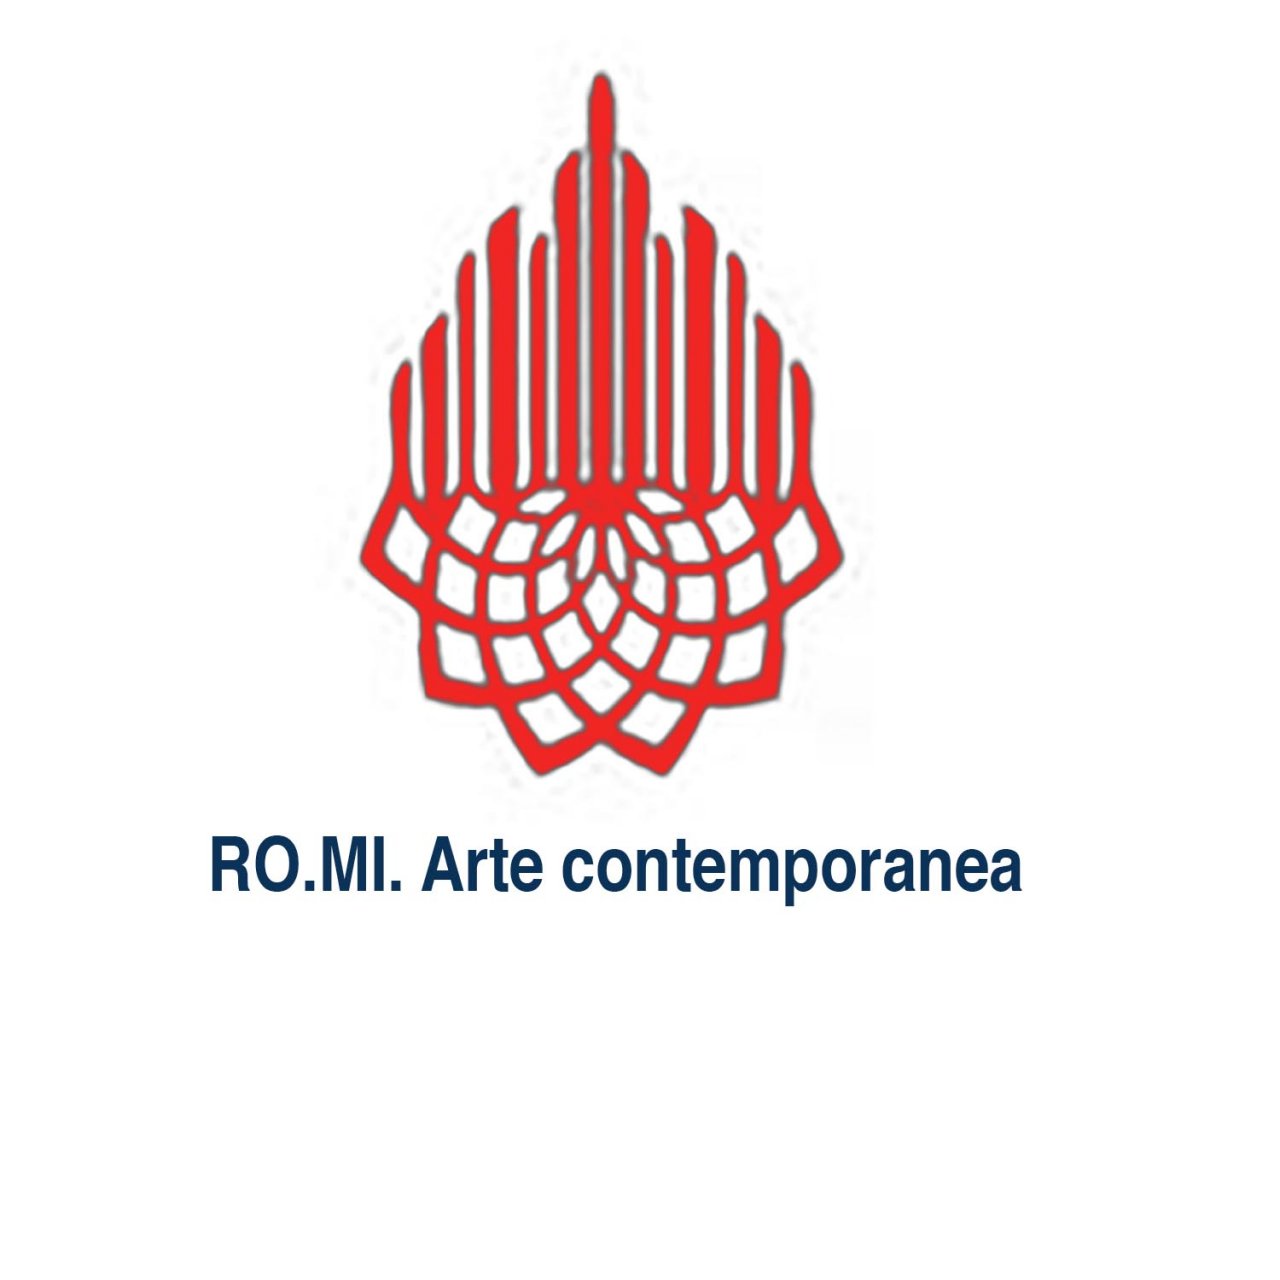 RO.MI. Arte Contemporanea